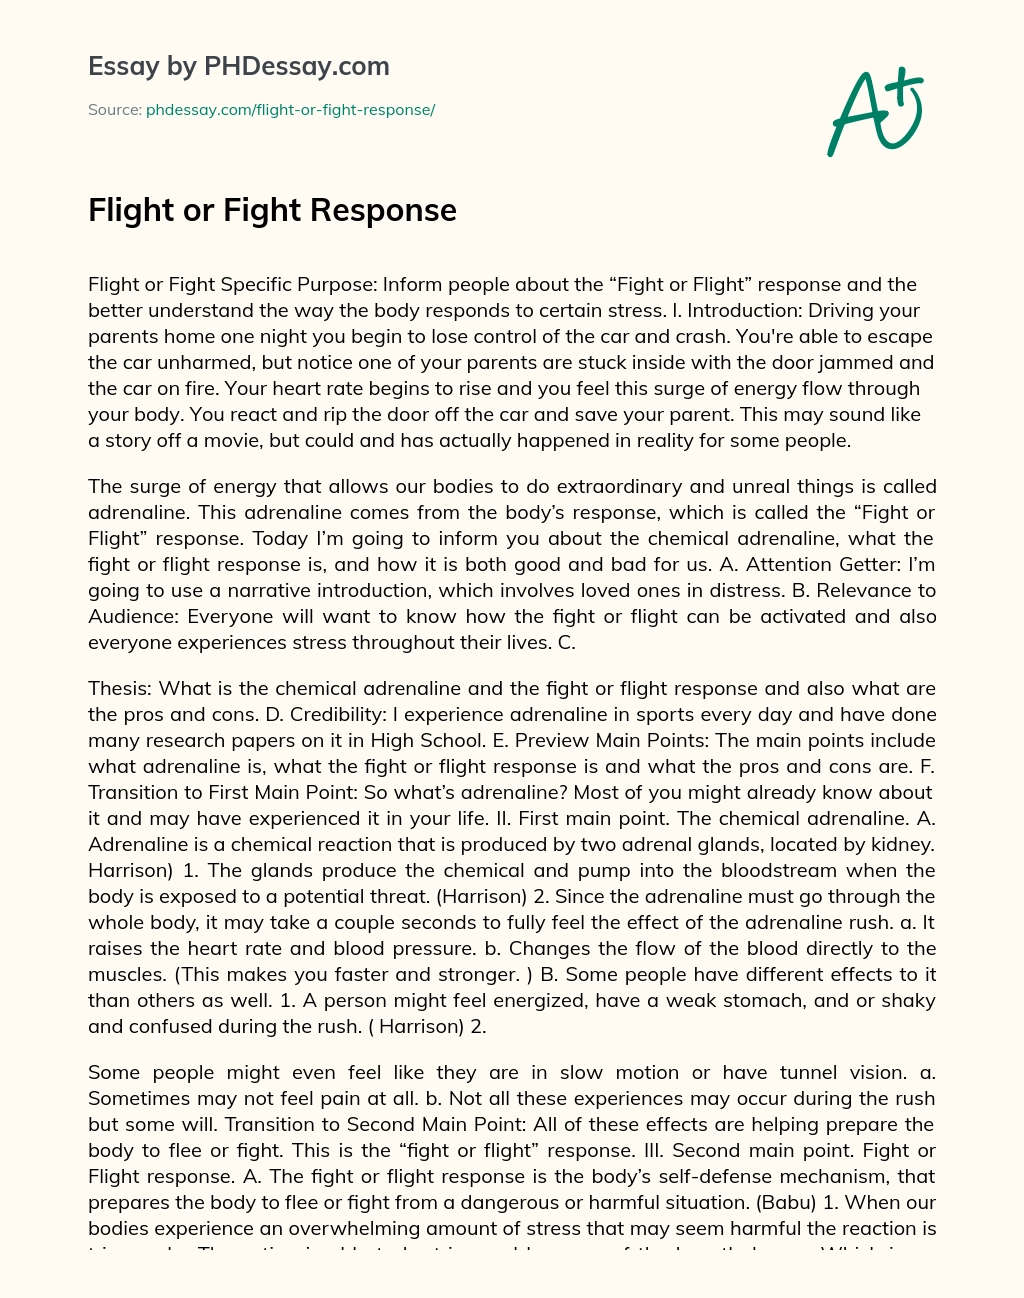 Flight or Fight Response essay